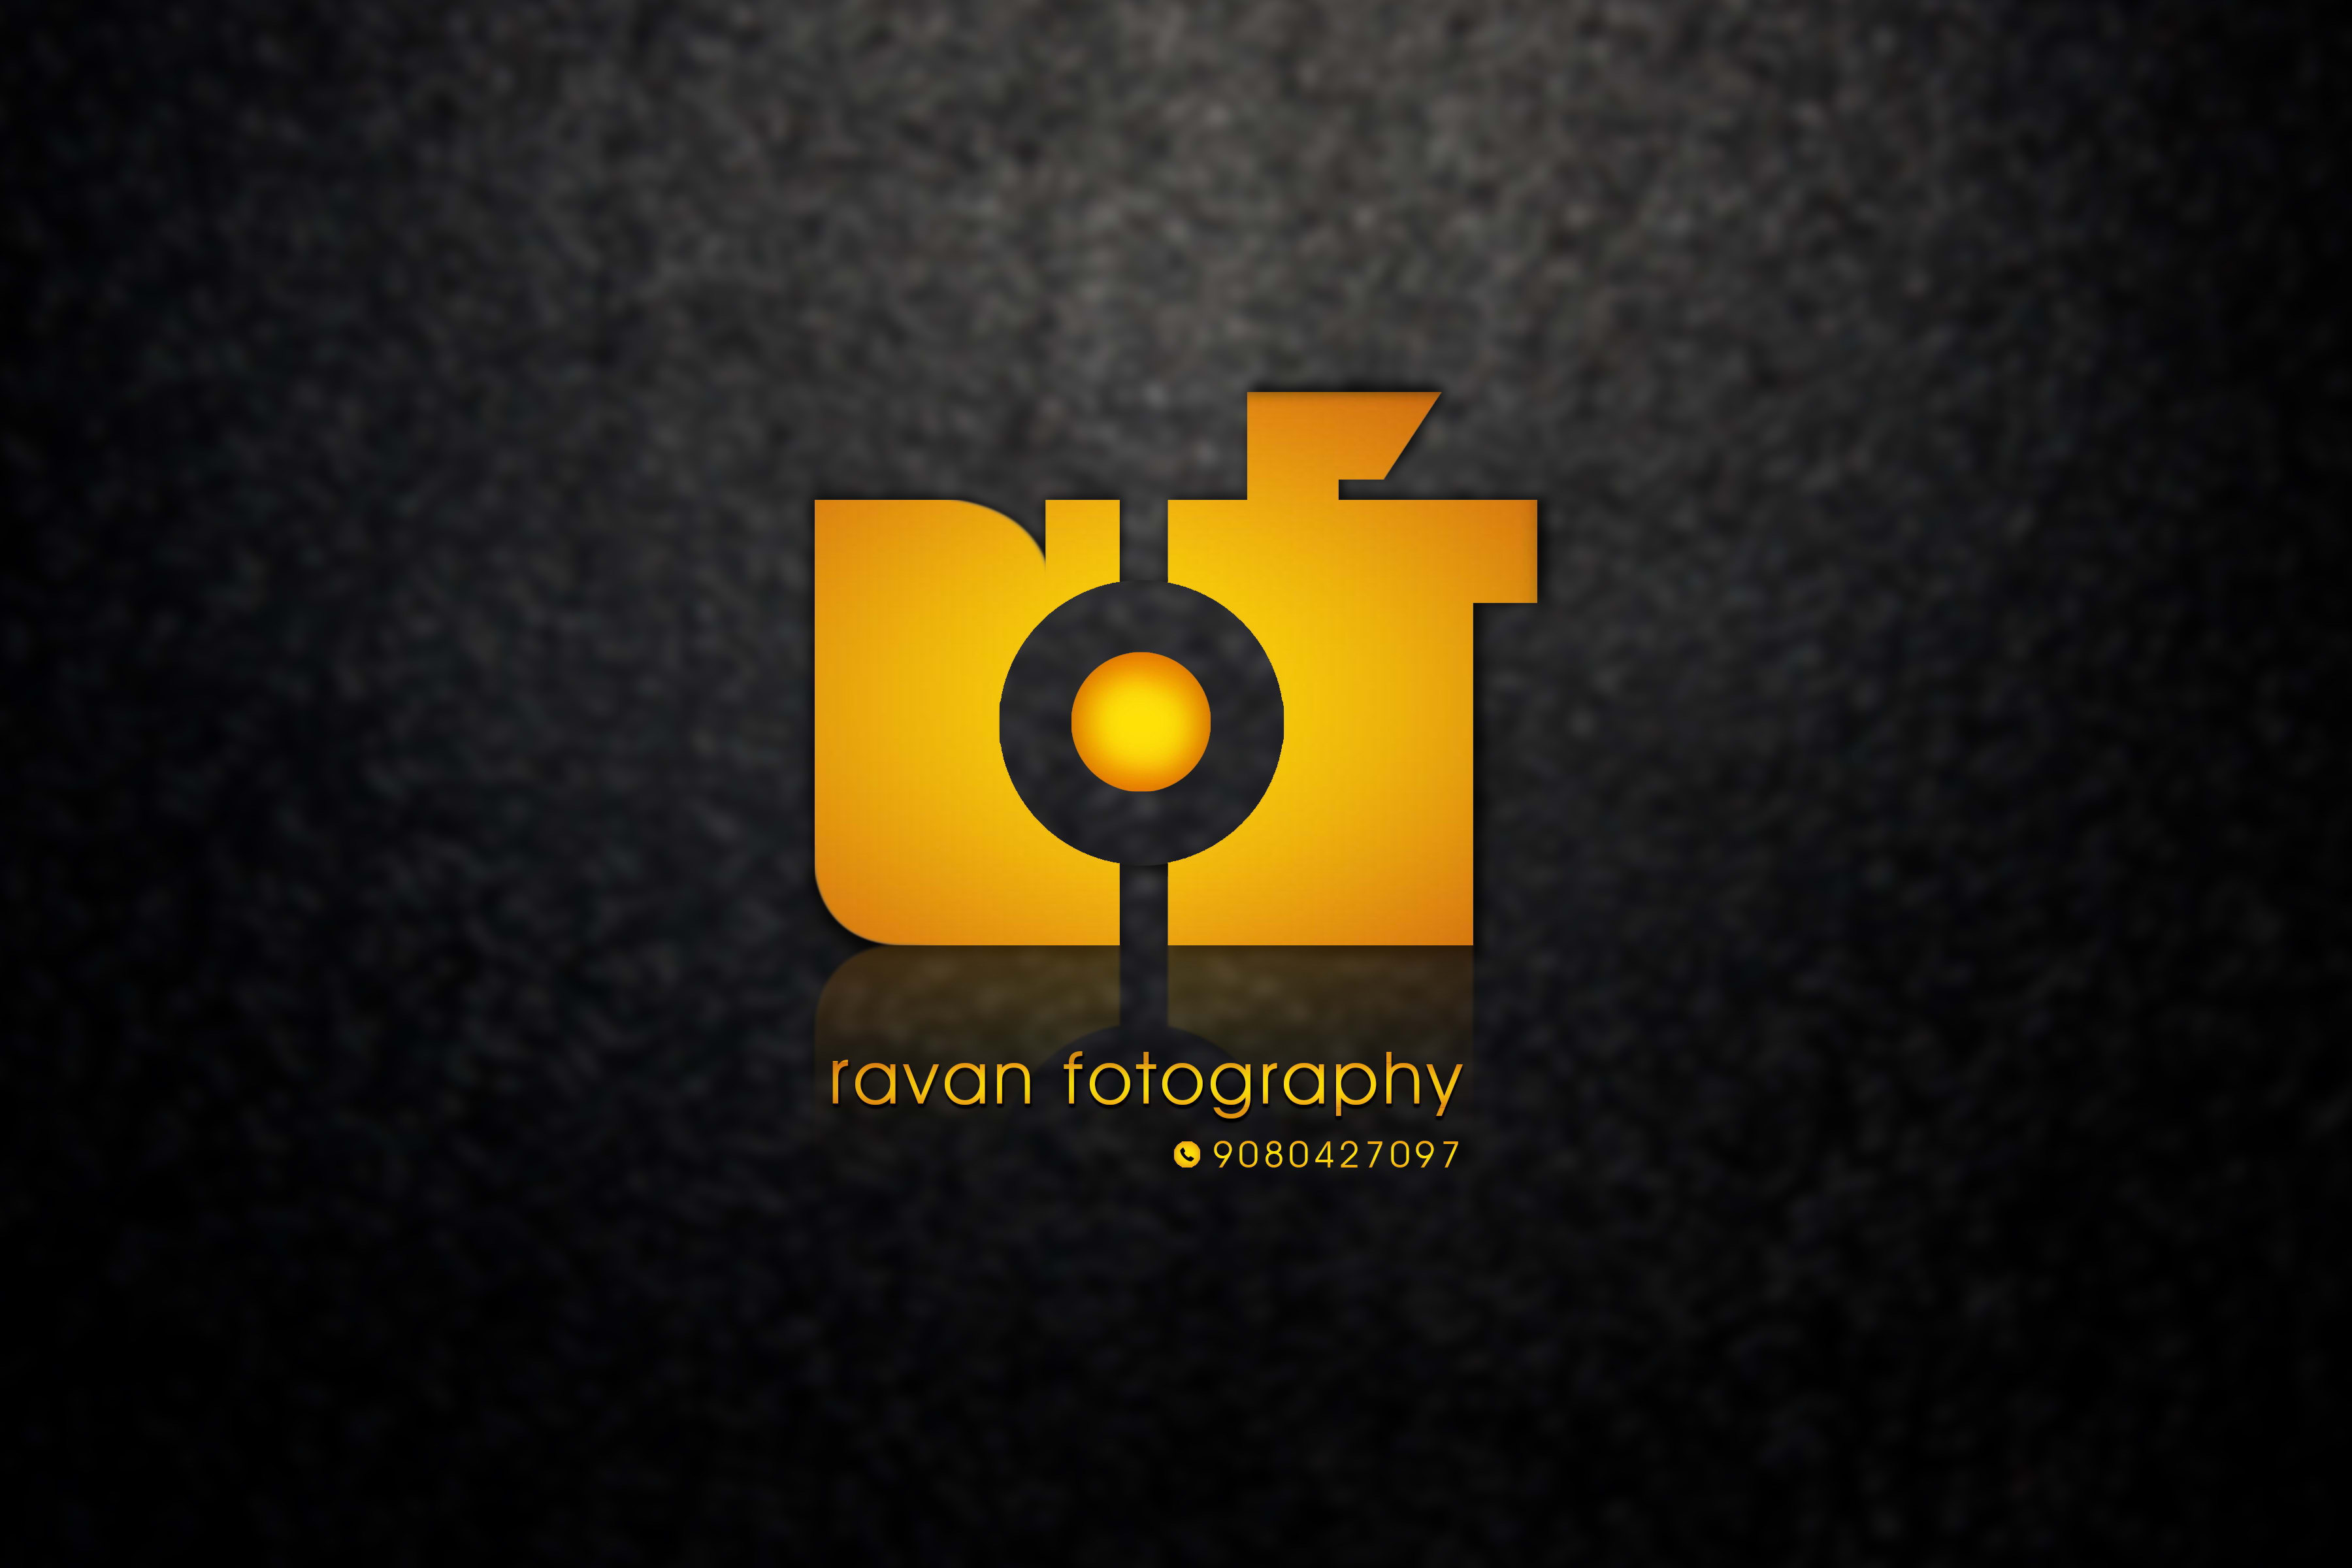 Ravan Fotography